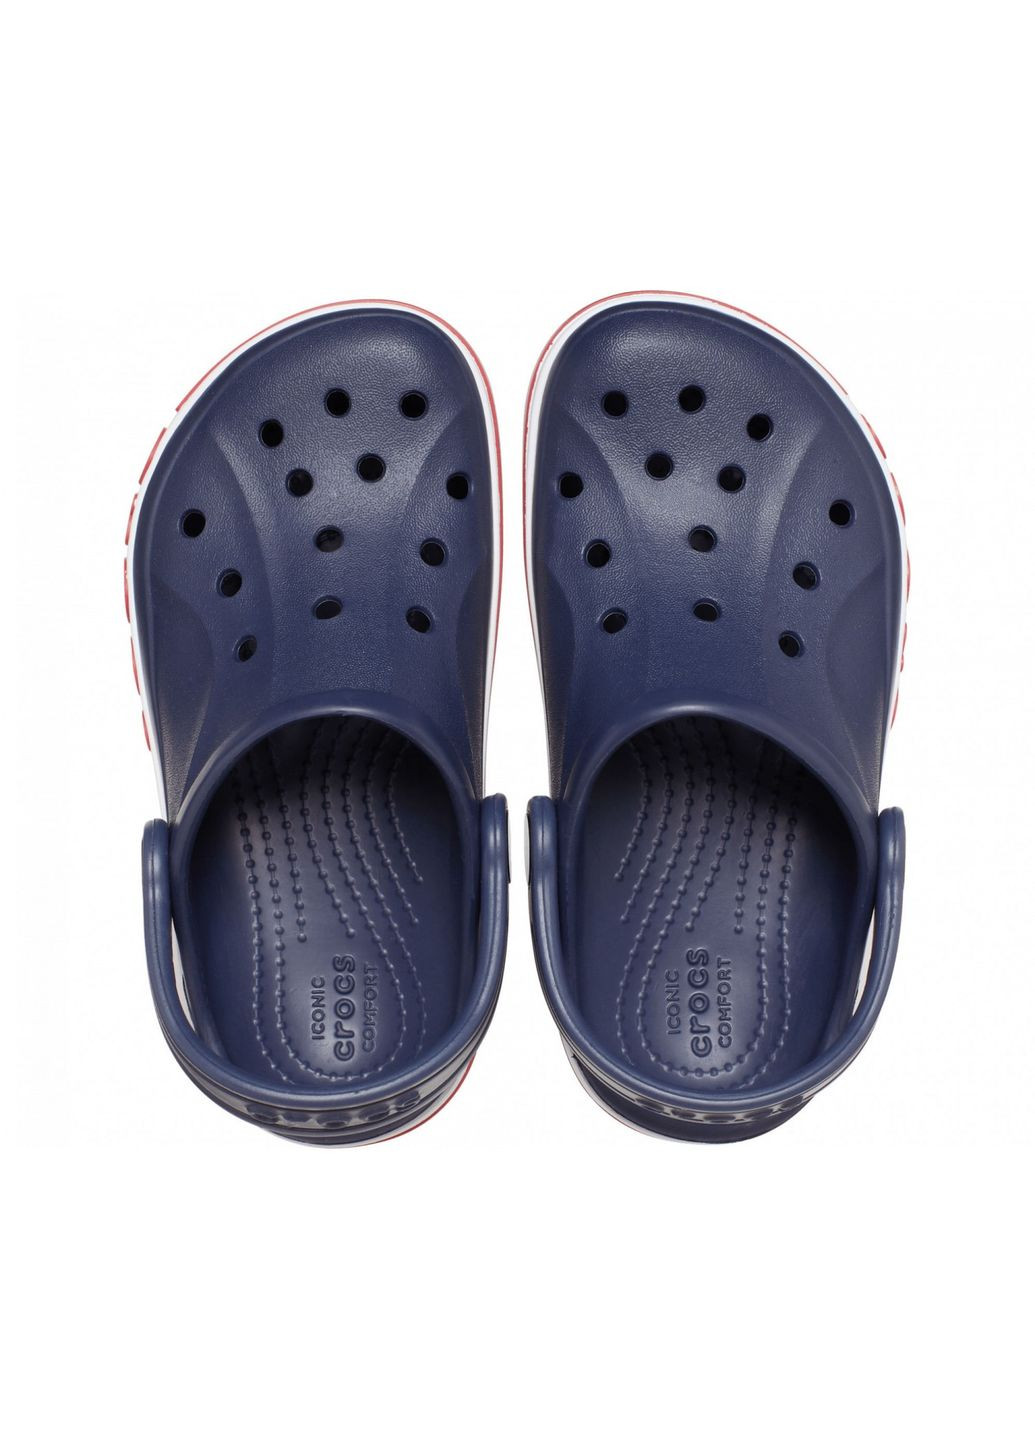 Синие кроксы bayaband clog navy j1-32.5-20.5 см 207019 Crocs